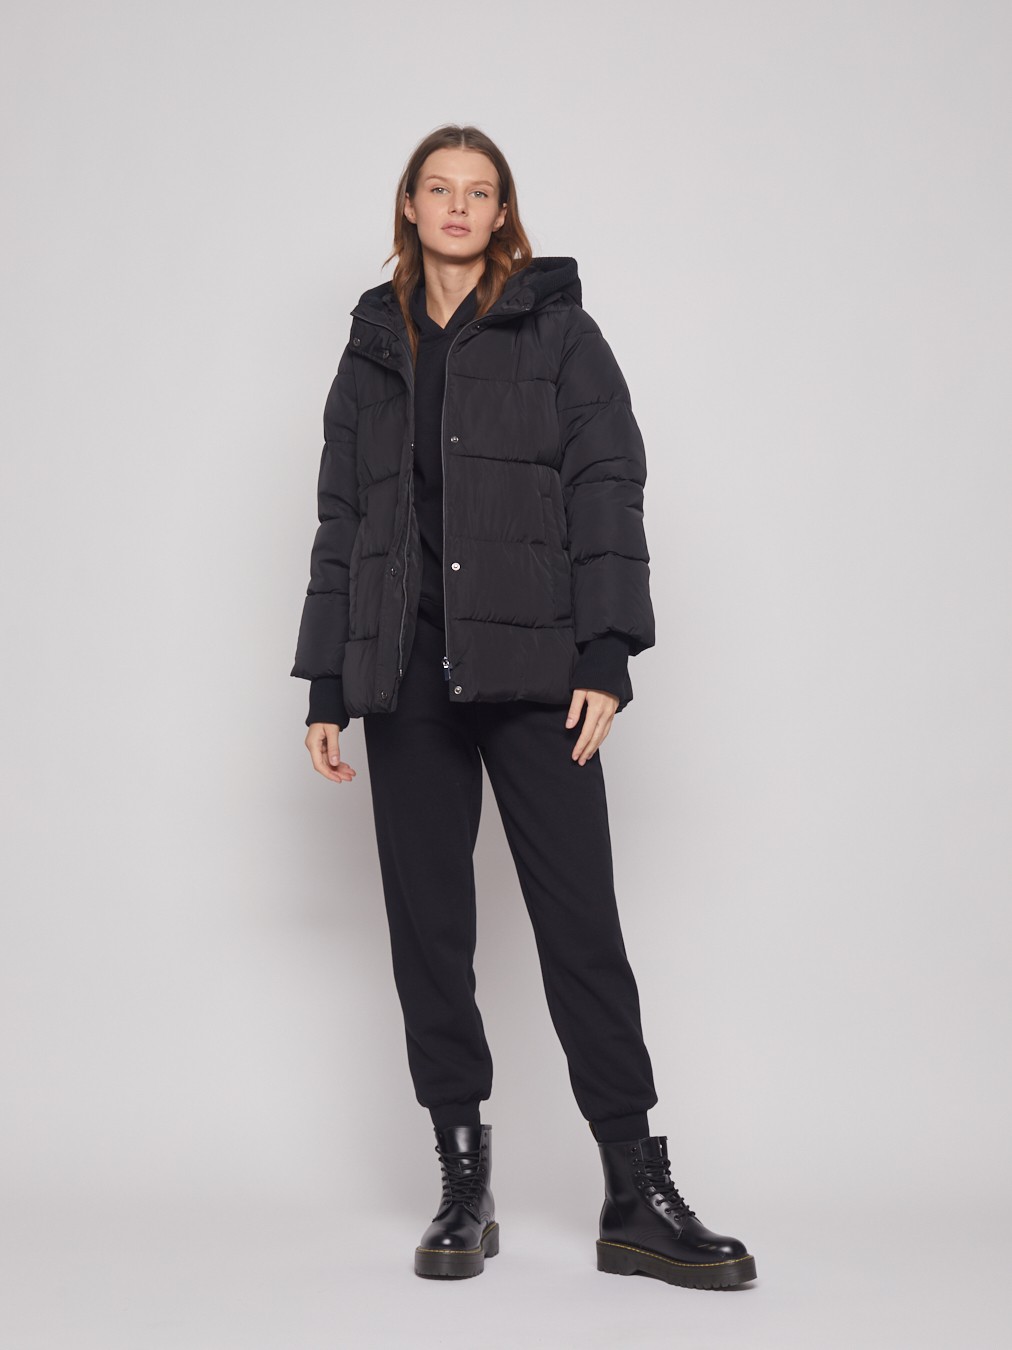 Тёплая куртка с удлинёнными манжетами zolla 022345102284, цвет черный, размер S - фото 2